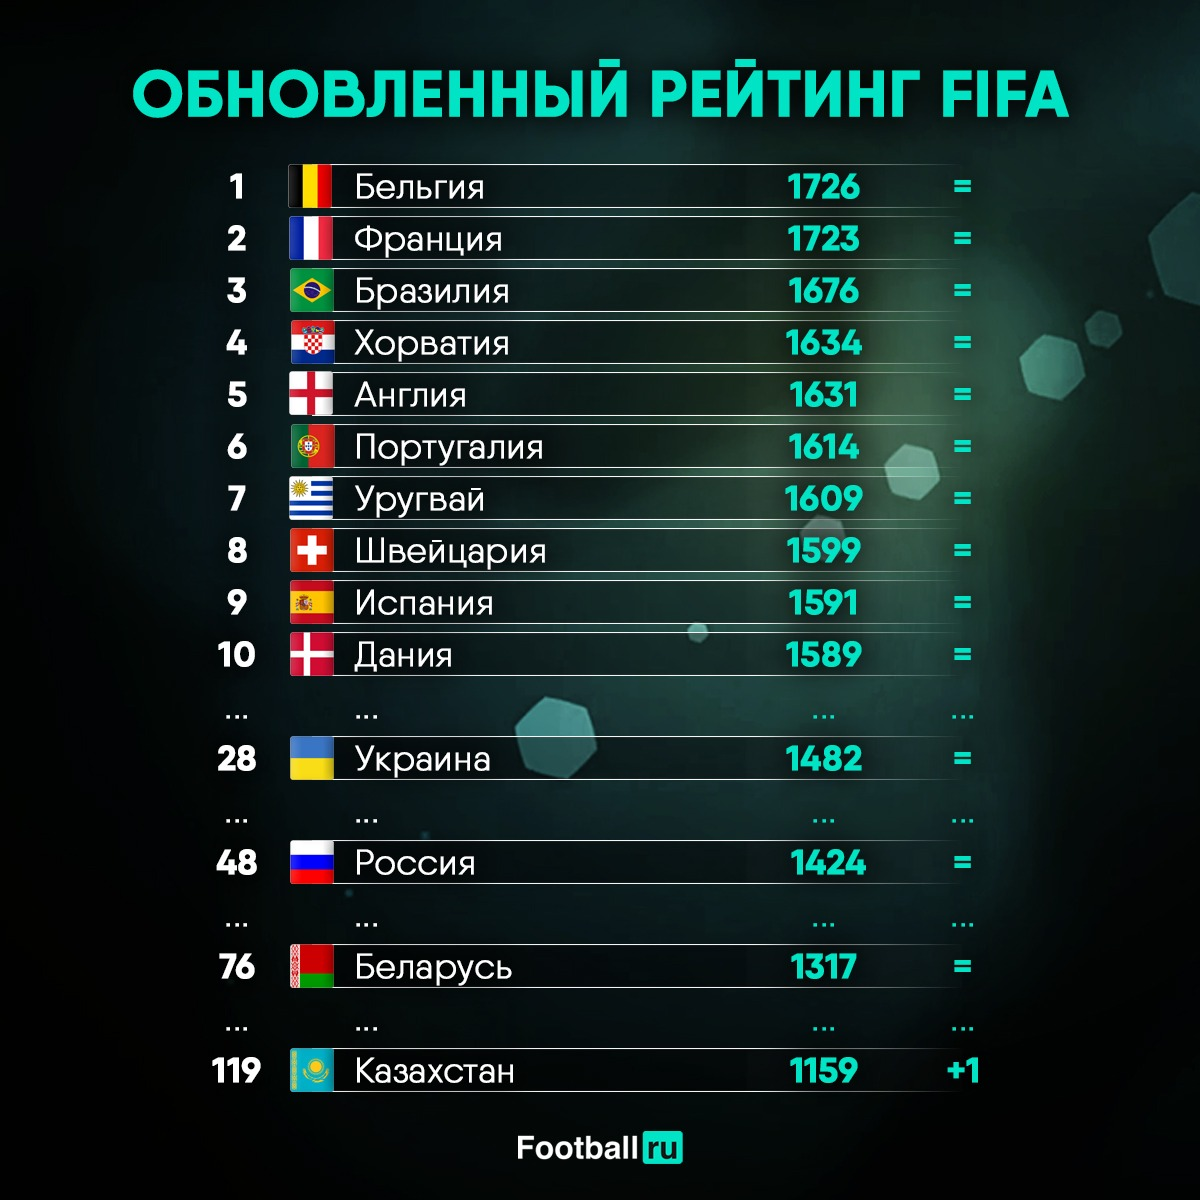 Fifa ranks. Рейтинговая таблица футбольных команд. Рейтинг стран по футболу. Топ сборных по футболу. Список стран по футболу по рейтингу.